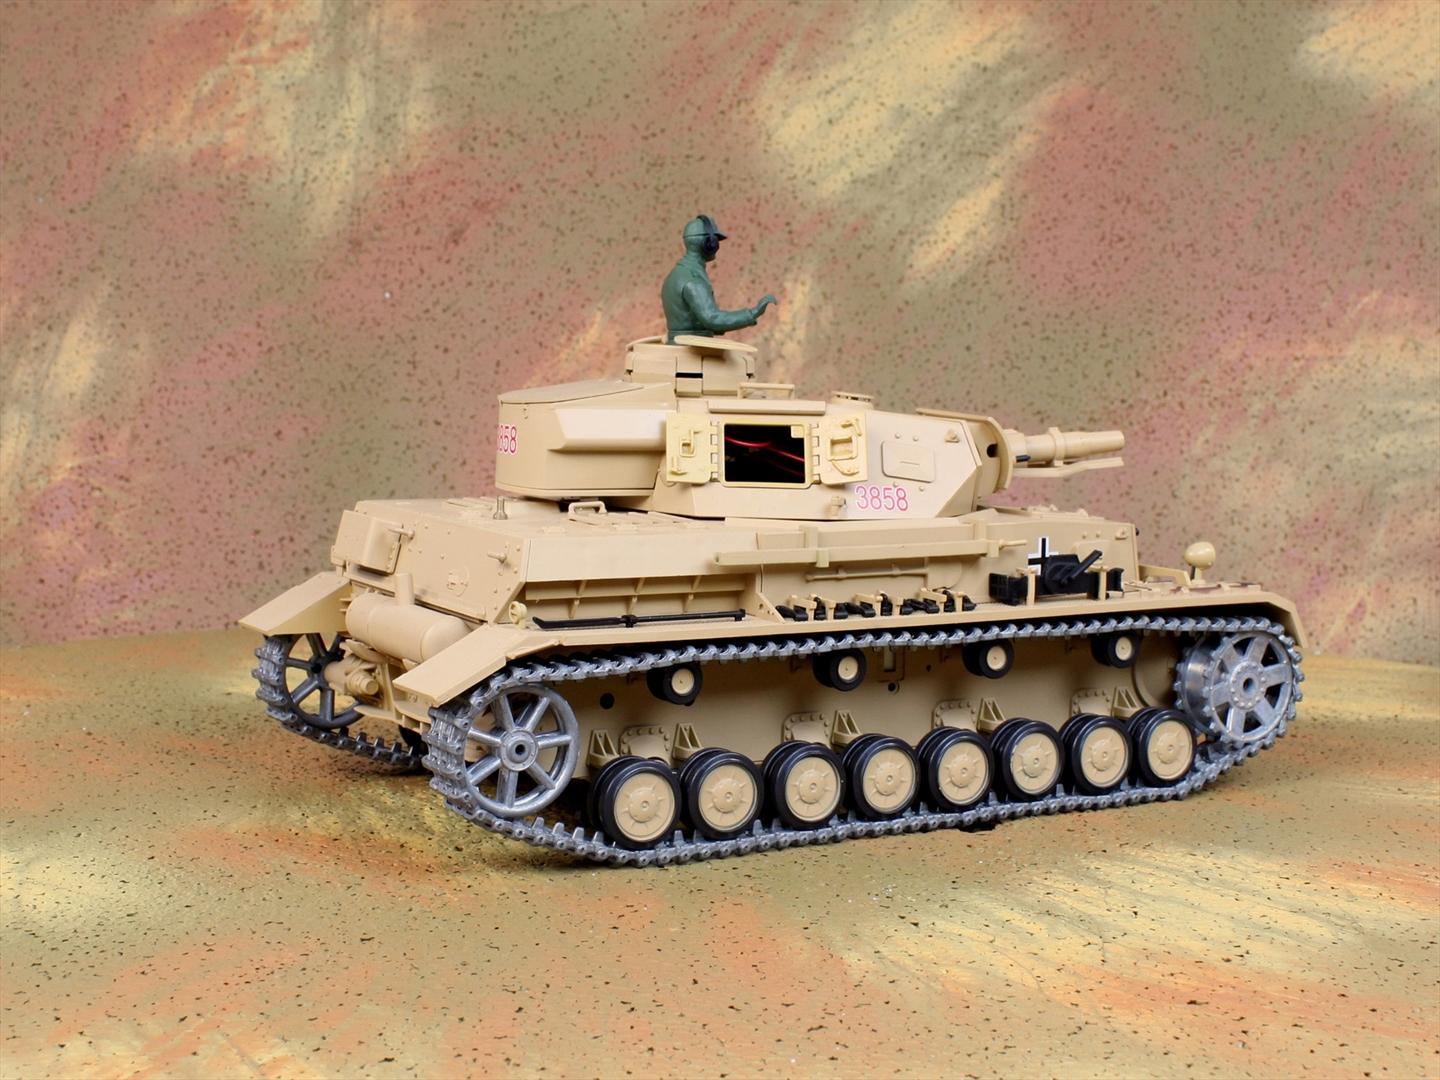 HENG-LONG Toys 3858 RC Scale Model Tank, World War II German DAK Pz.Kpfw.IV Ausf.F-1 Remote Control Tank.